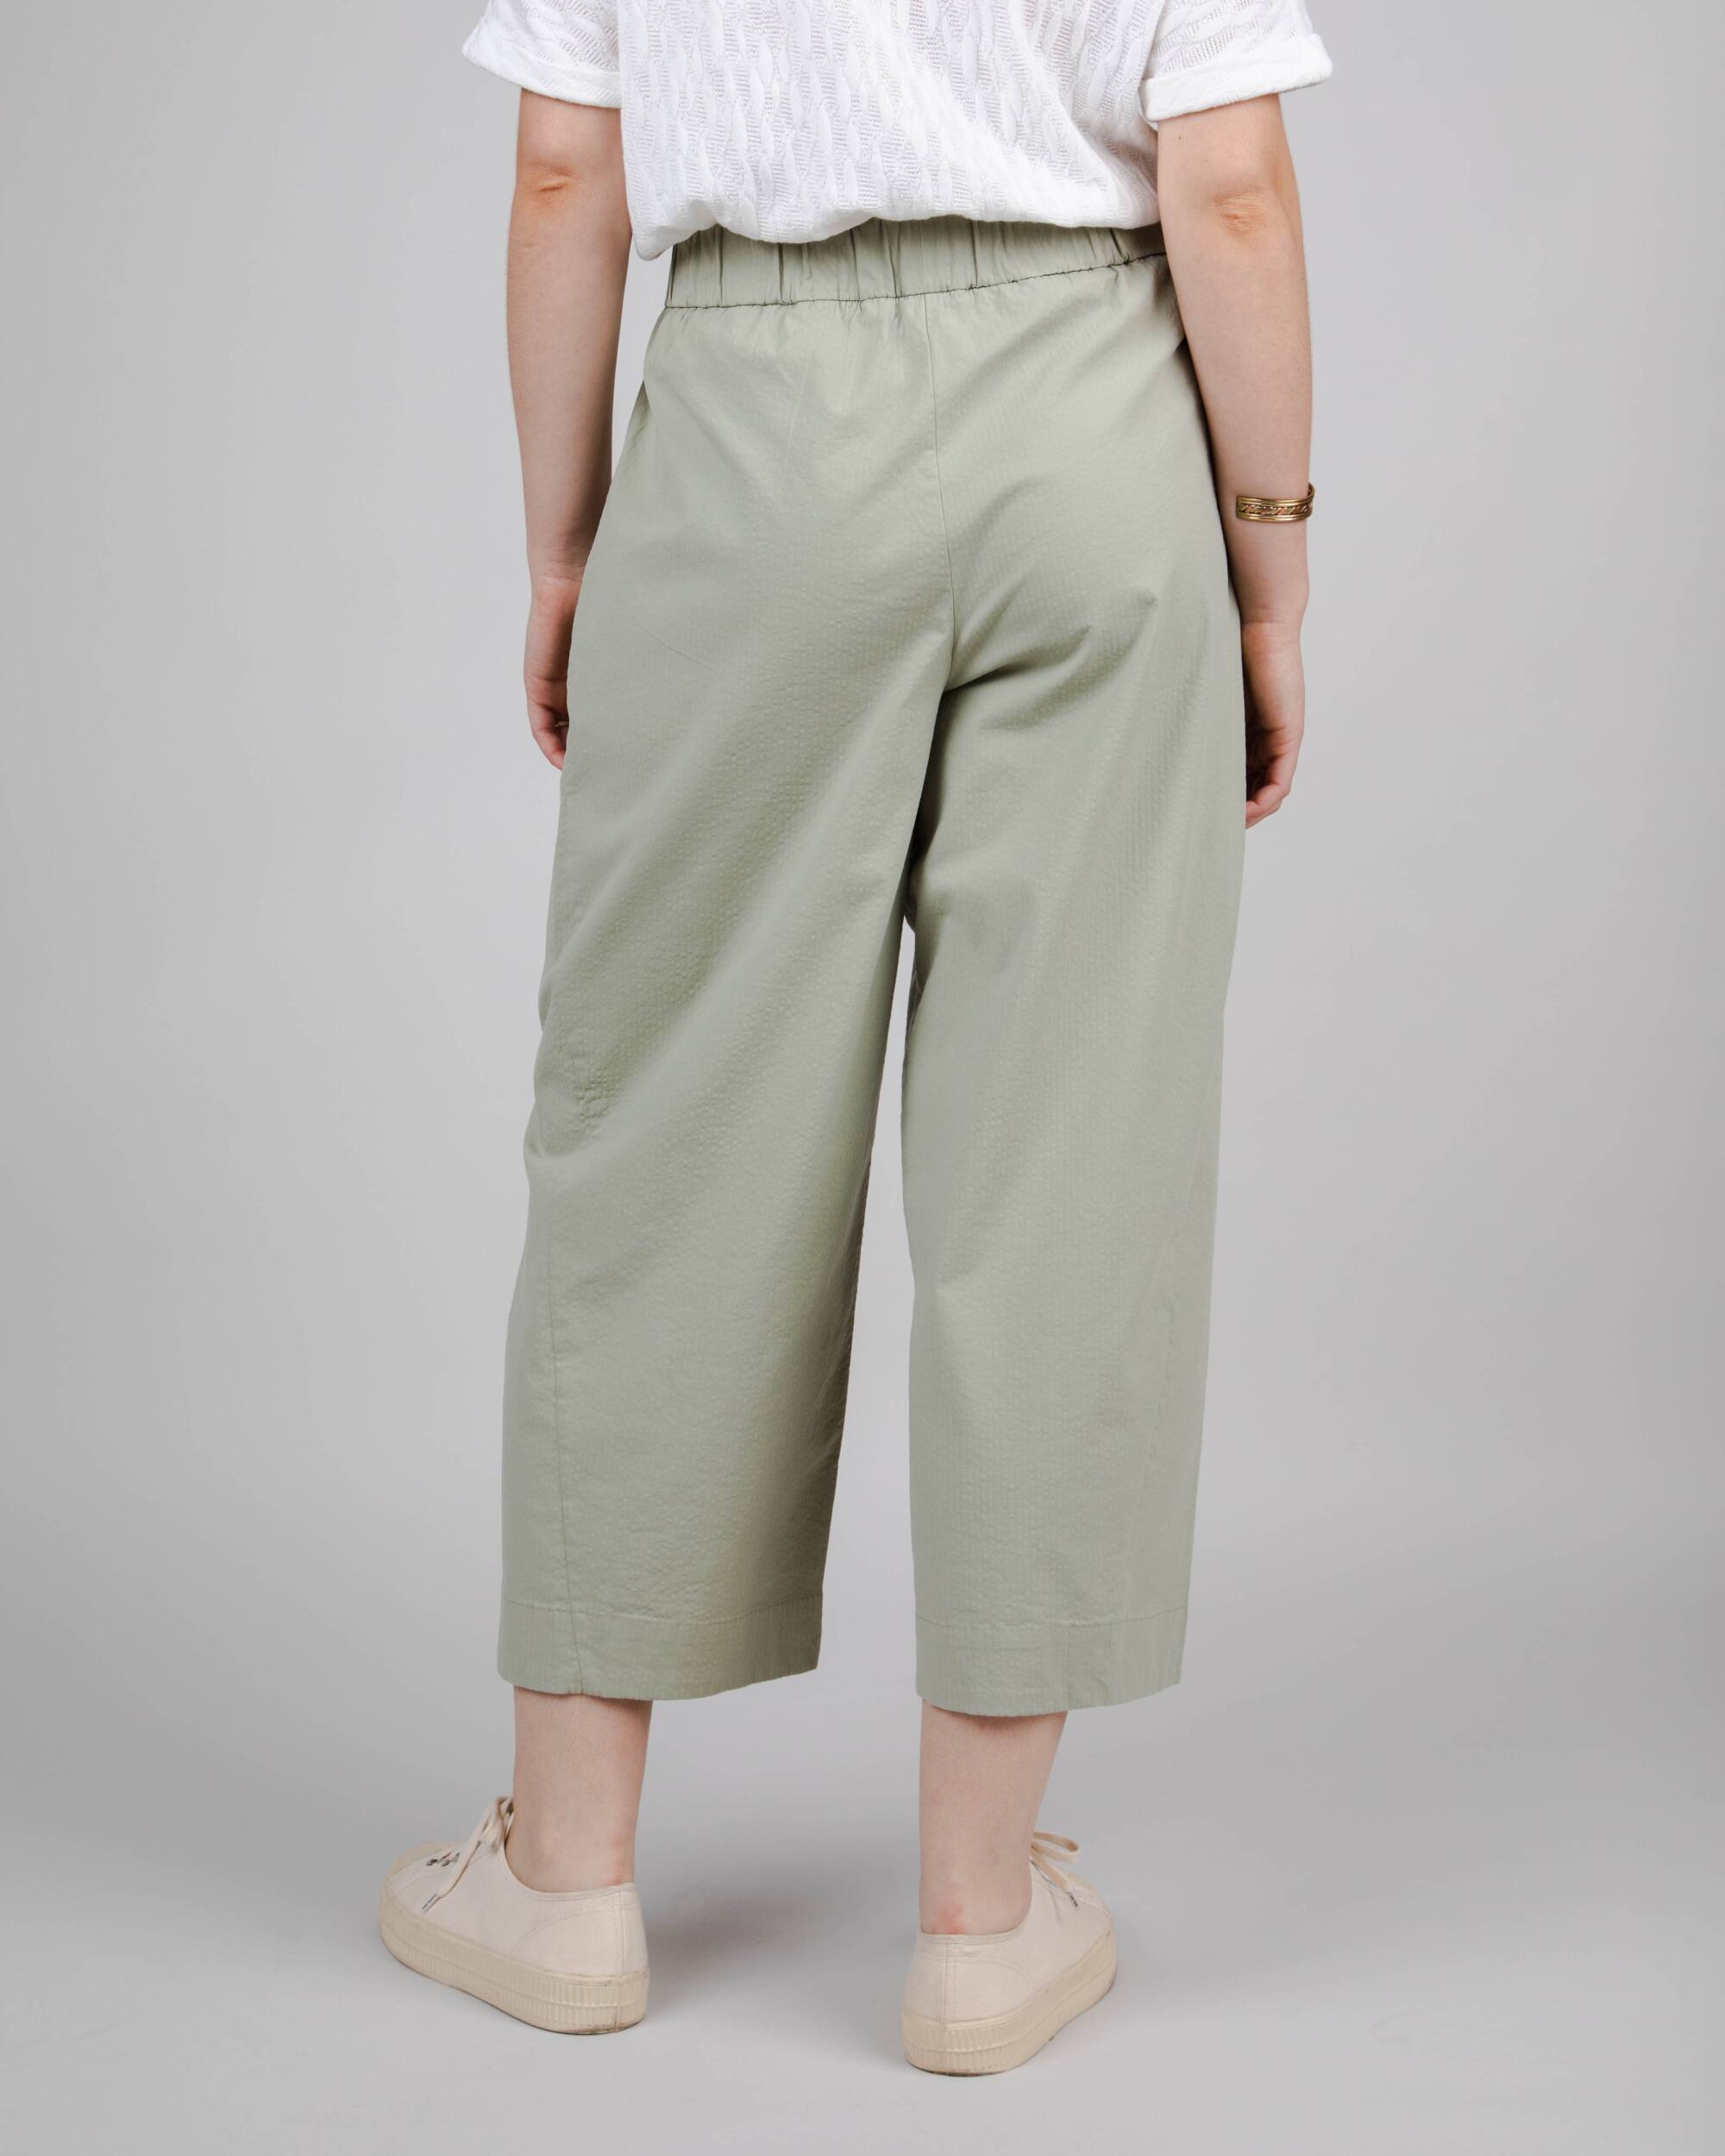 Brava Fabrics pantalón Pantalón Picnic Oversize Kakhi de Algodón Orgánico moda sostenible moda ética